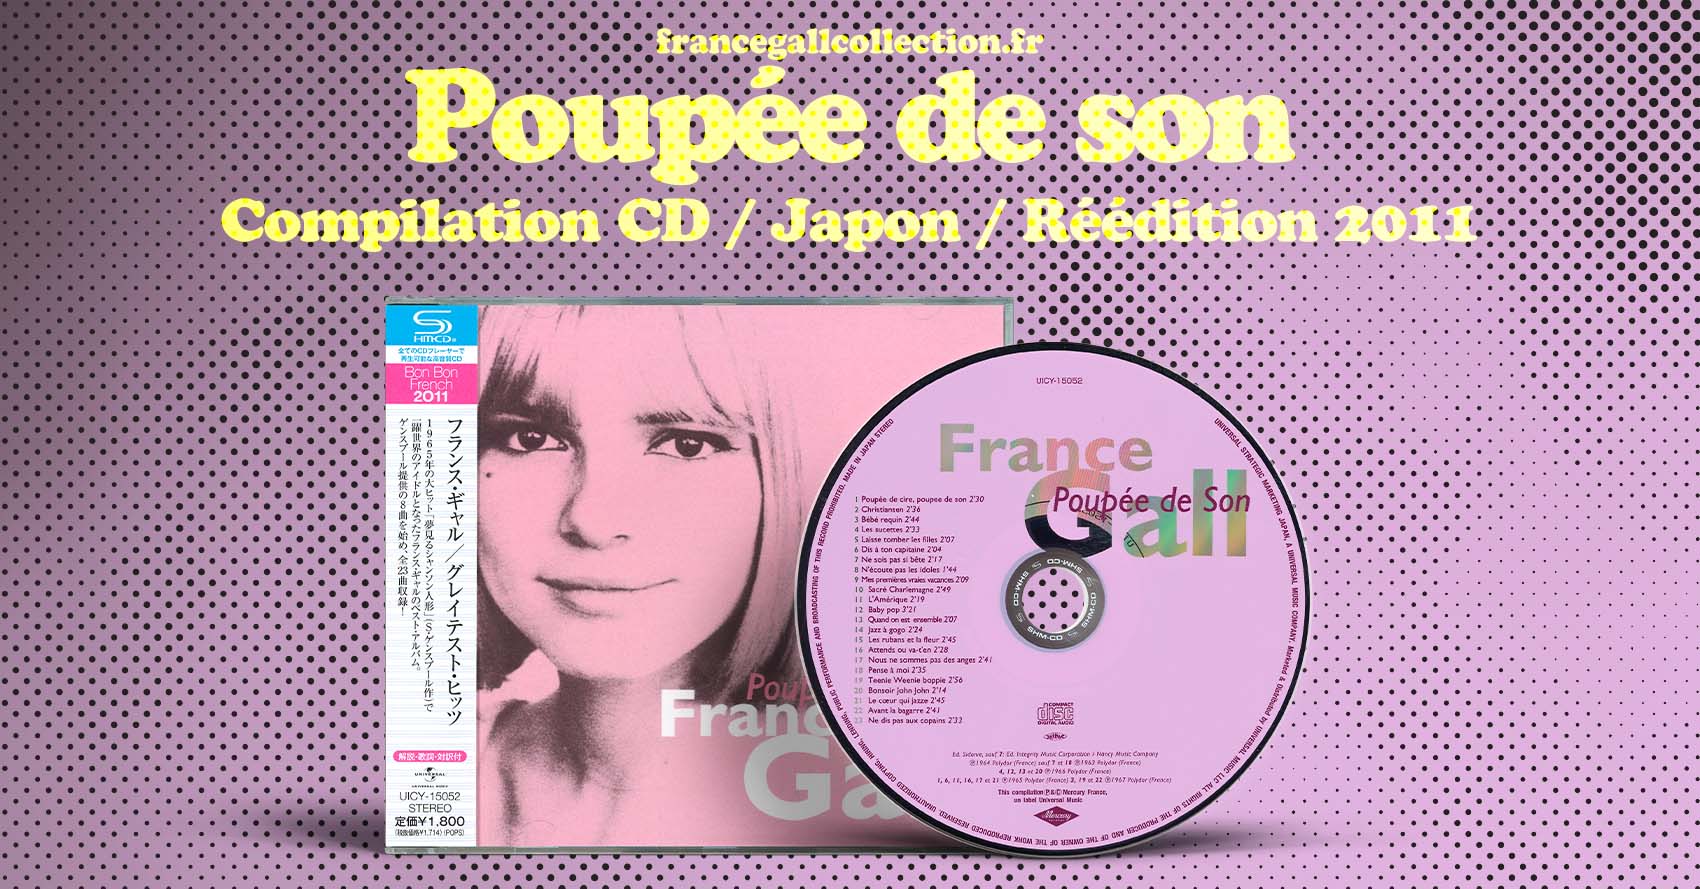 Réédition dans la série Bon Bon French 2011, au format CD avec OBI* du 5 novembre 2011, en provenance du Japon, de la compilation parue initialement le 7 juillet 1992 contenant 23 titres de France Gall parus entre 1963 et 1967.